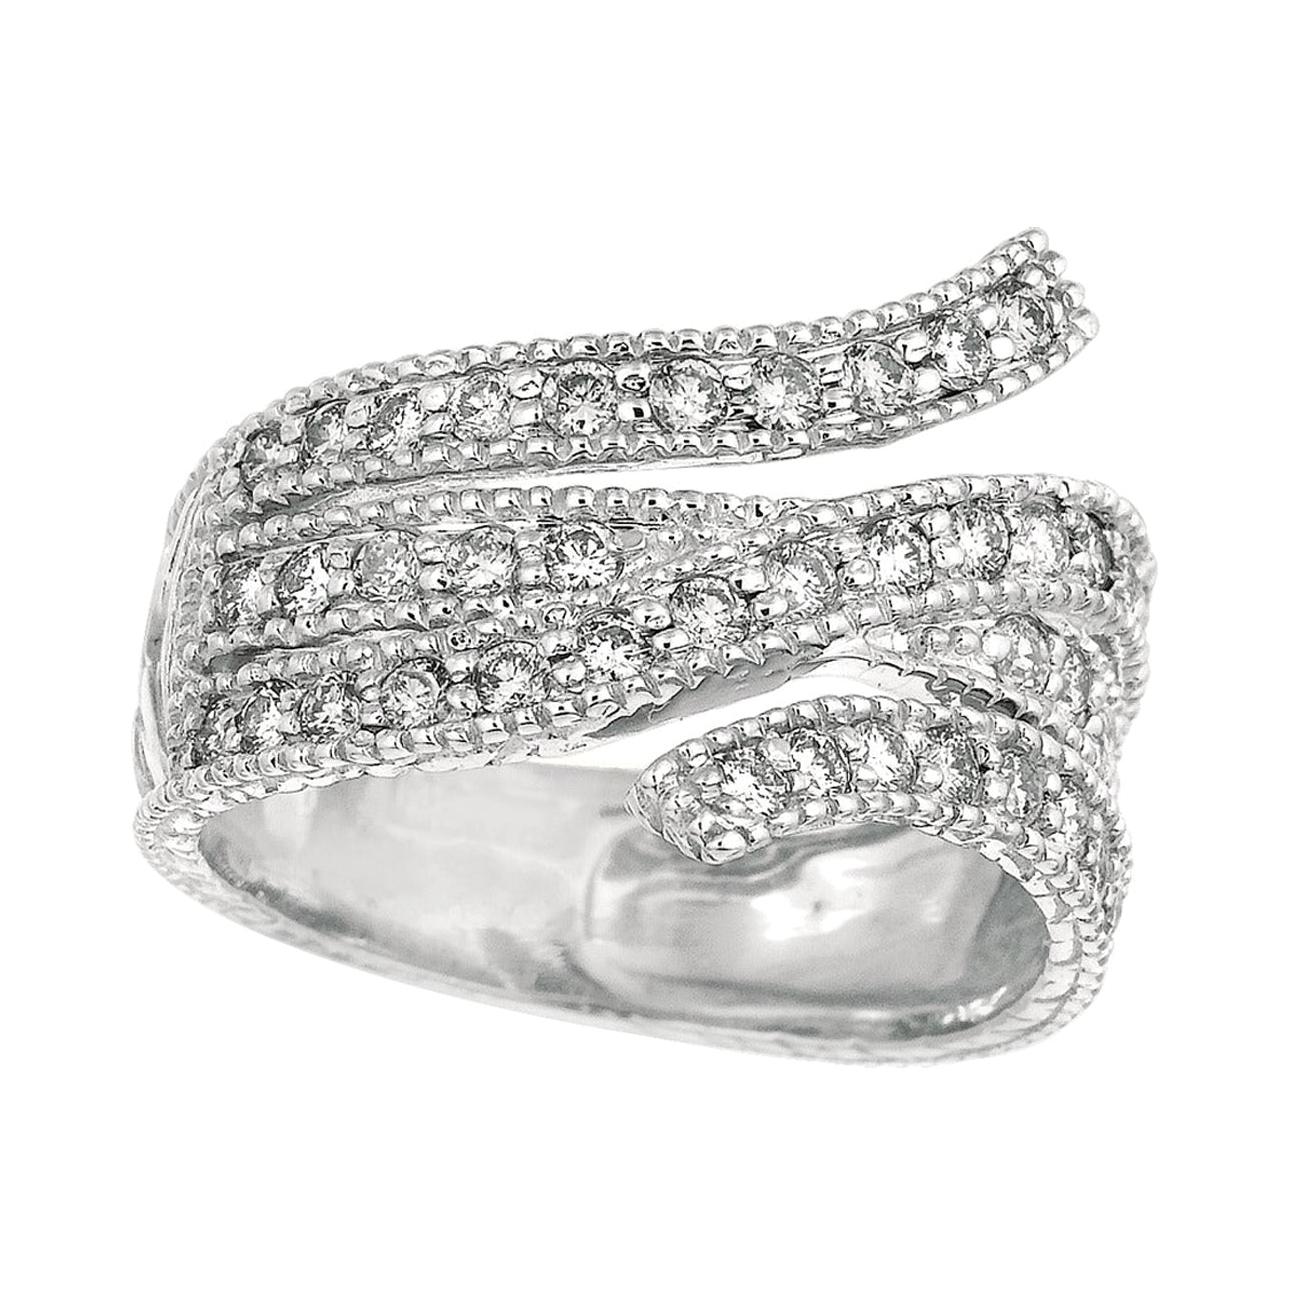 For Sale:  1.05 Carat Natural Diamond Fashion Ring Band G SI 14 Karat White Gold